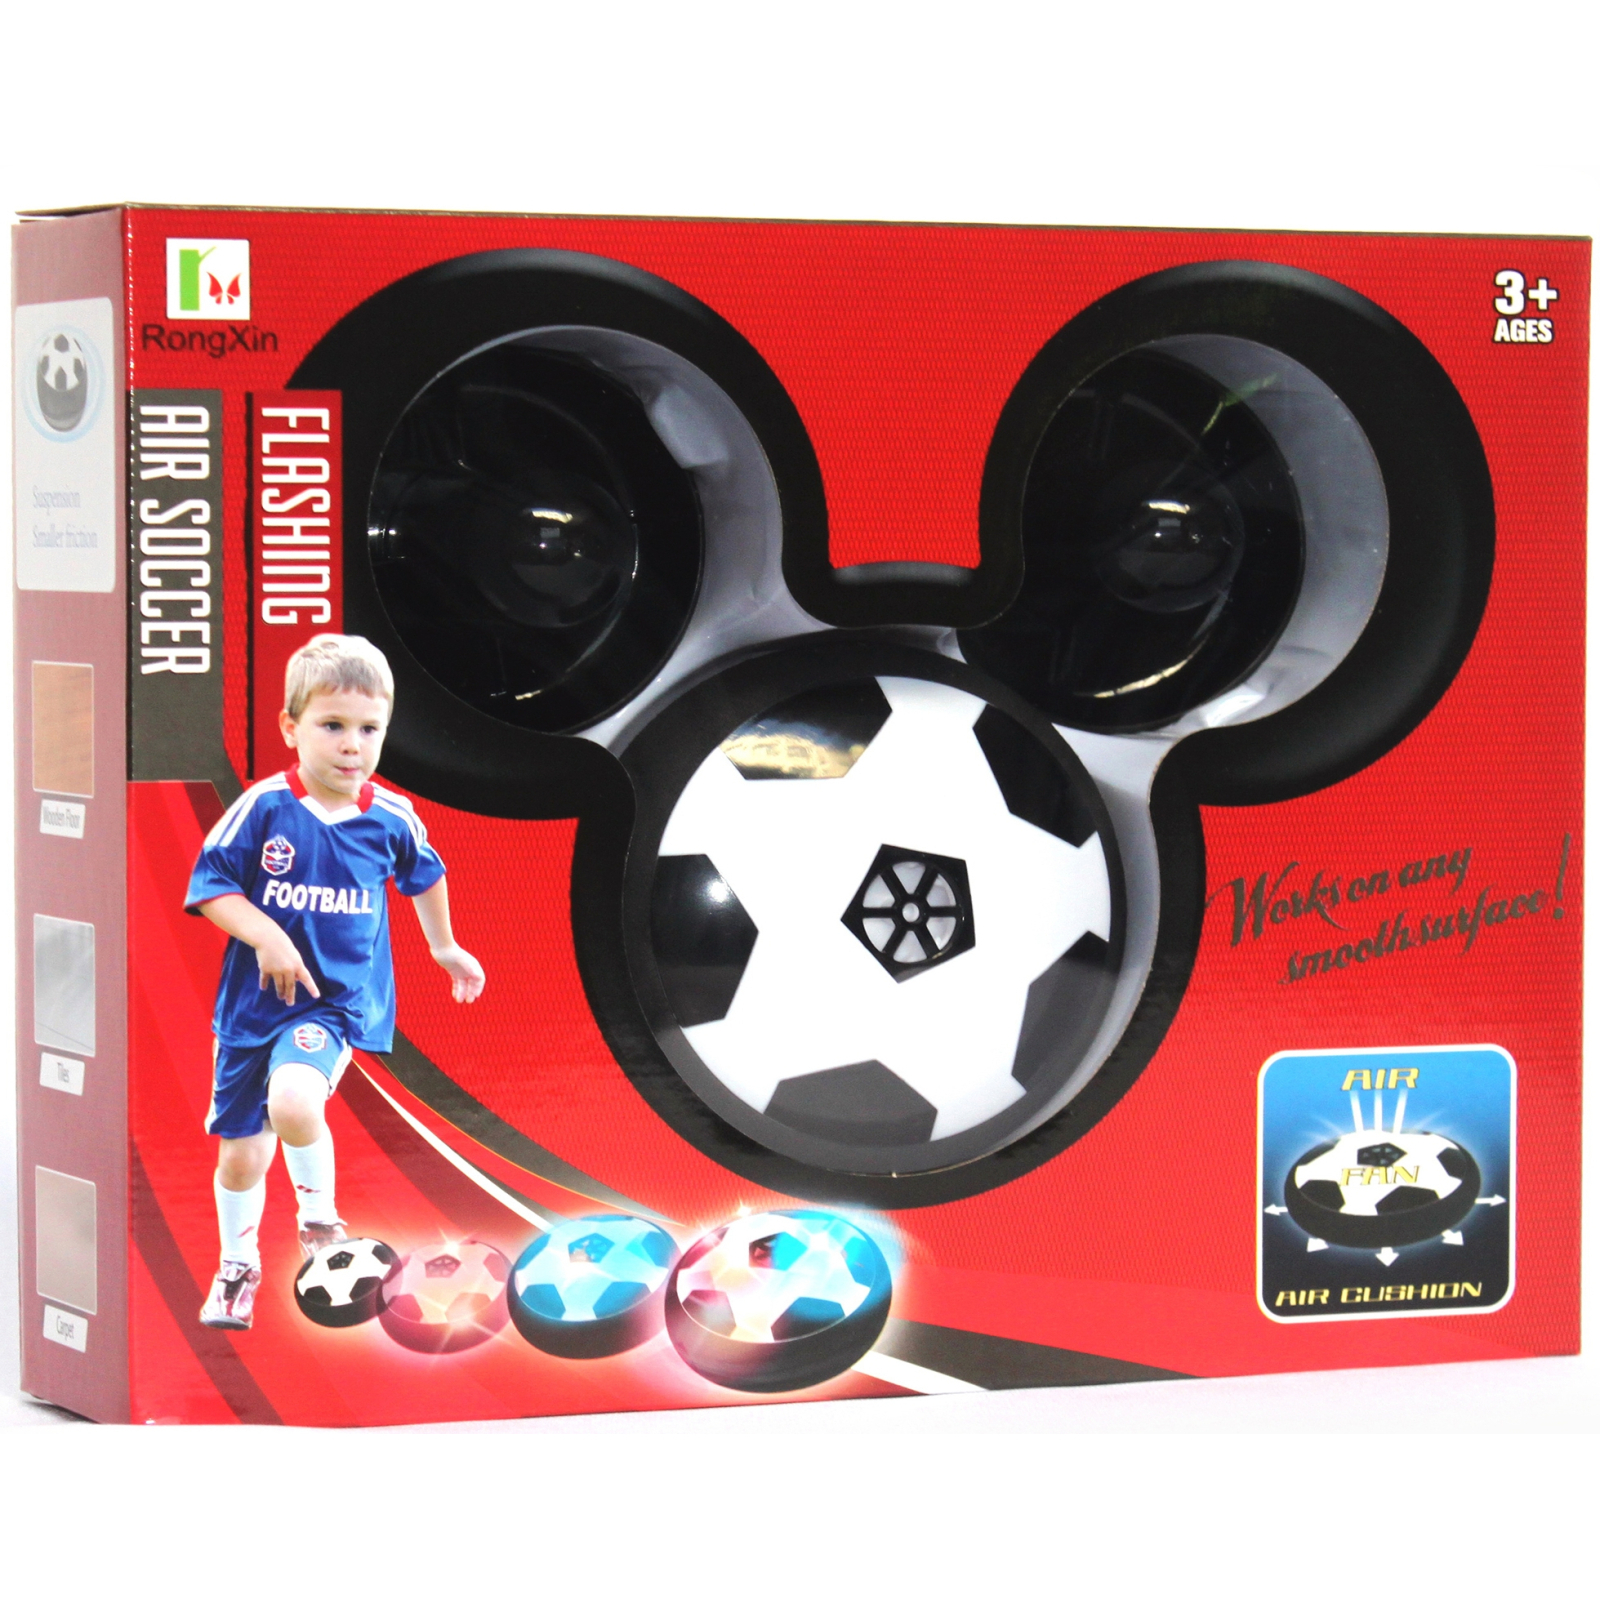 Игровой набор Rongxin для домашнего футбола – аэромяч с воротами и клюшками 11 см (3235)